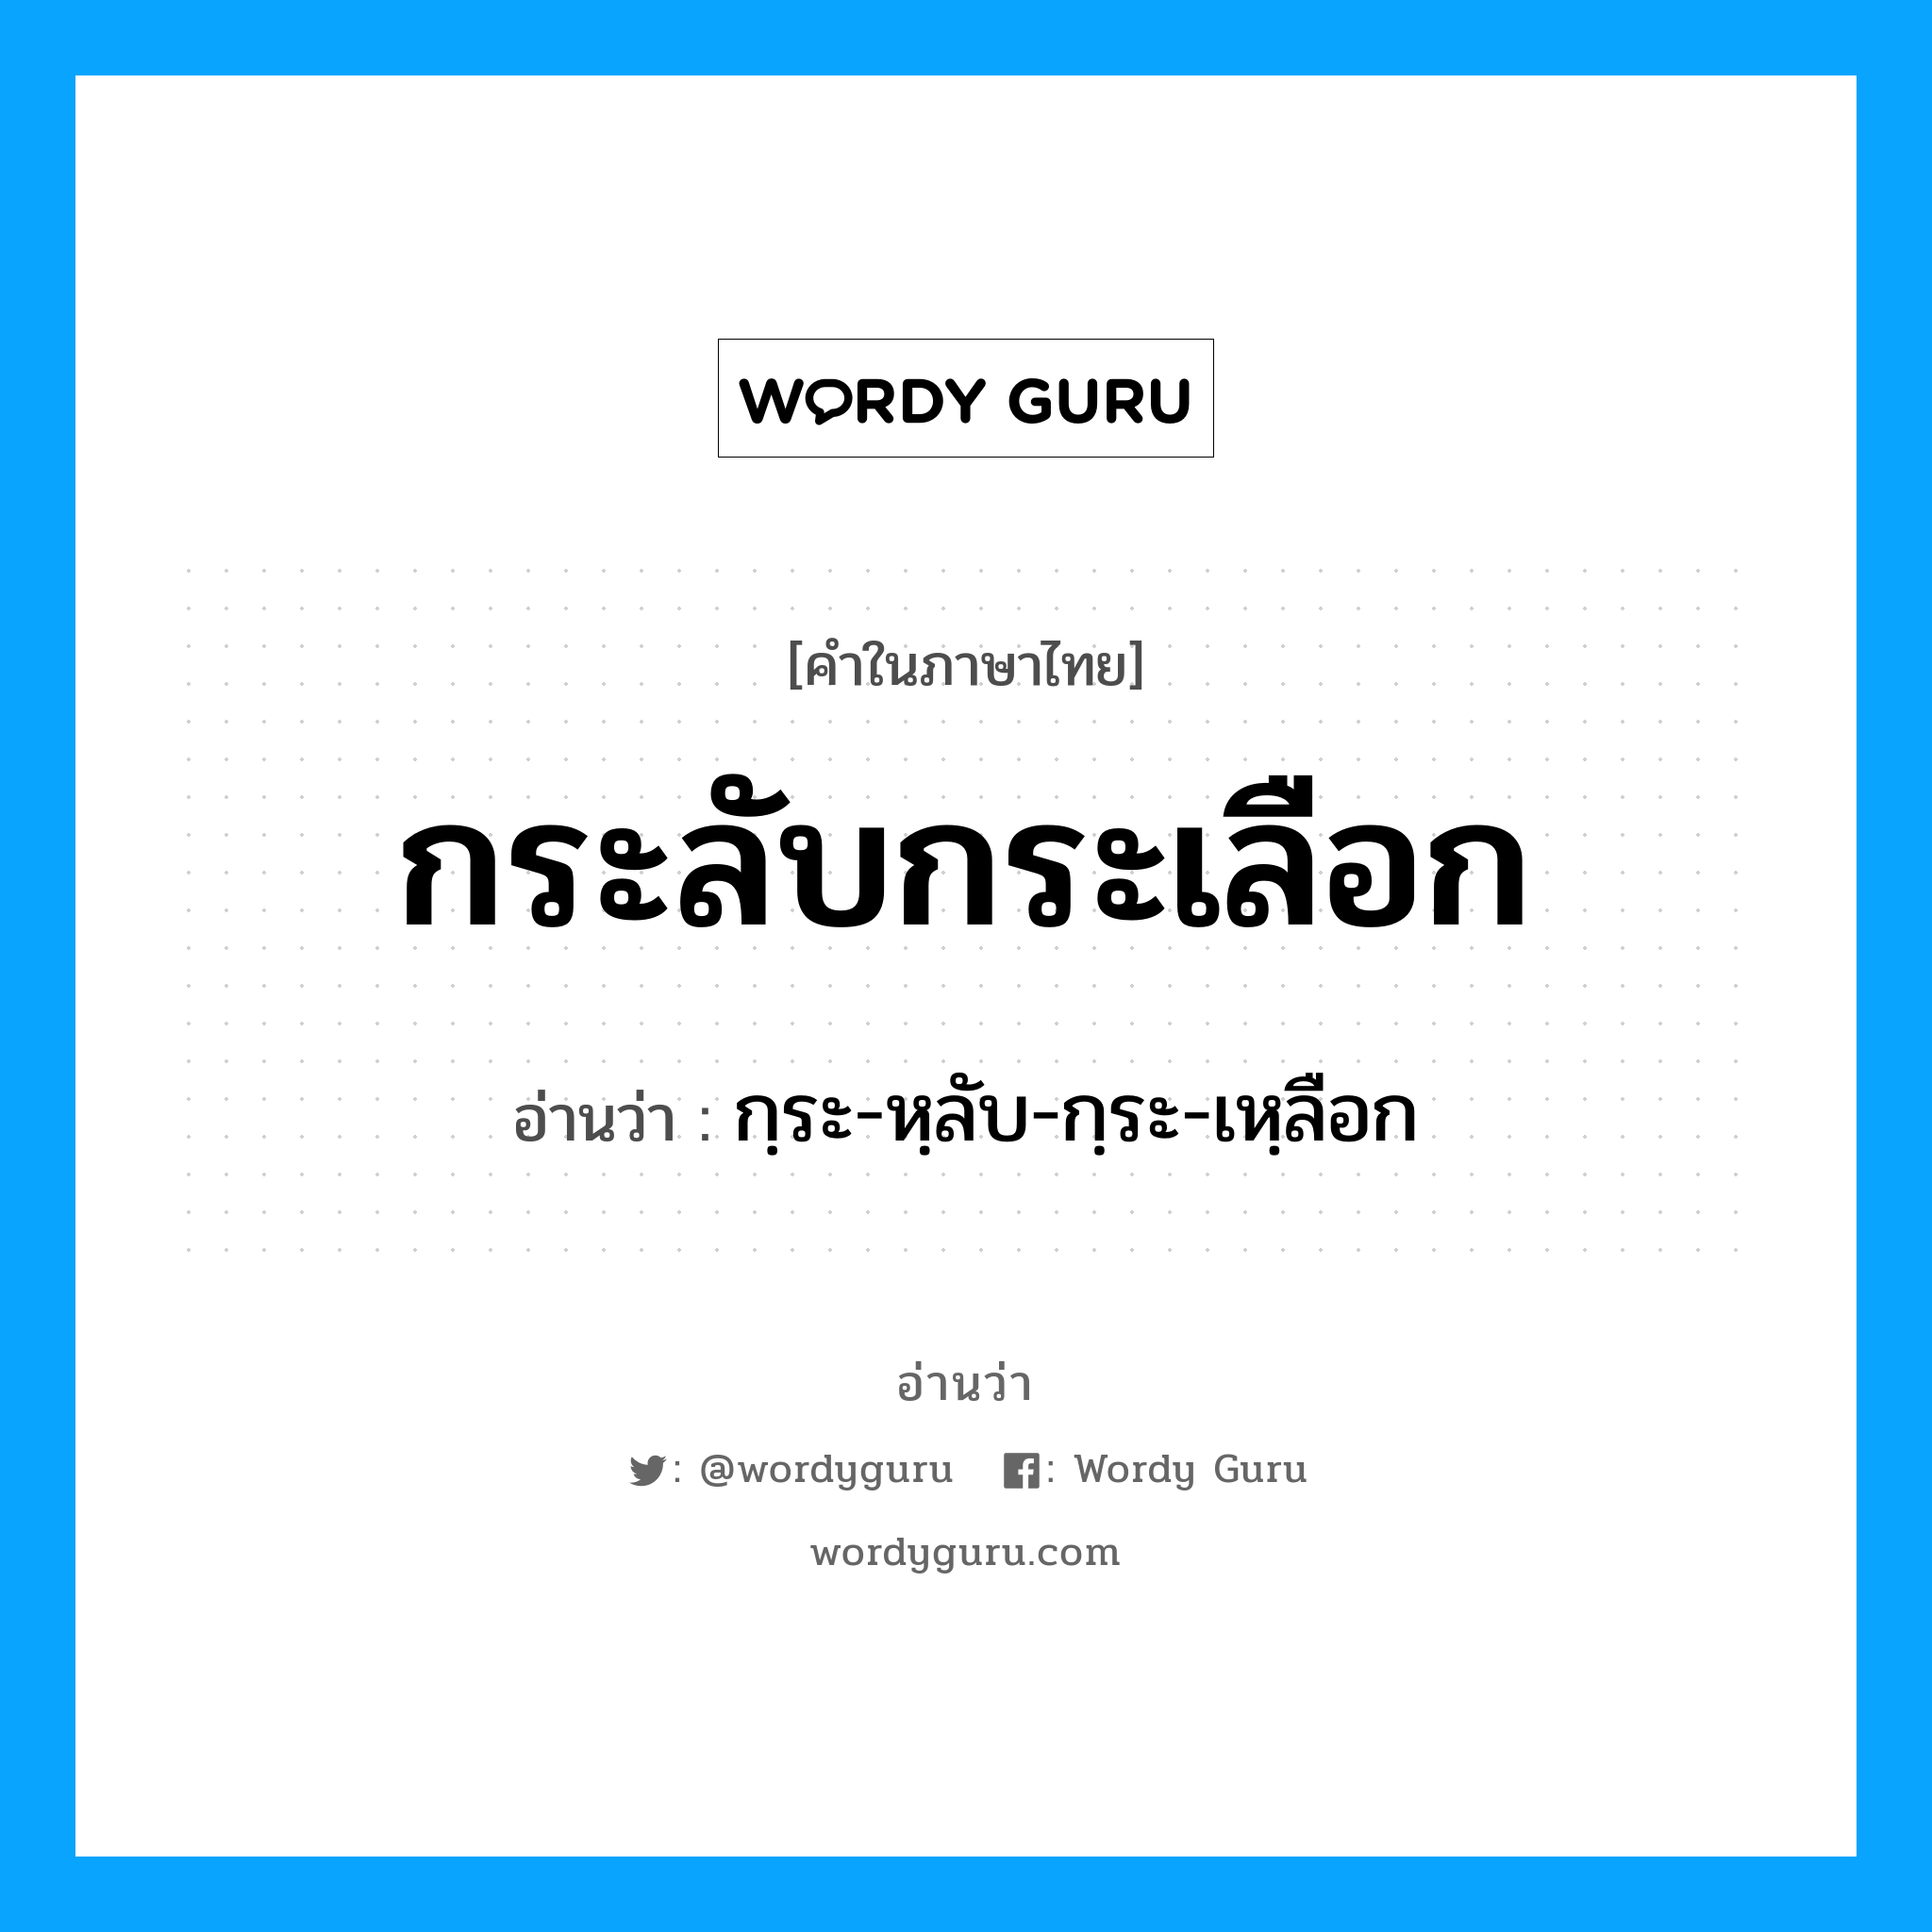 กฺระ-หฺลับ-กฺระ-เหฺลือก เป็นคำอ่านของคำไหน?, คำในภาษาไทย กฺระ-หฺลับ-กฺระ-เหฺลือก อ่านว่า กระลับกระเลือก